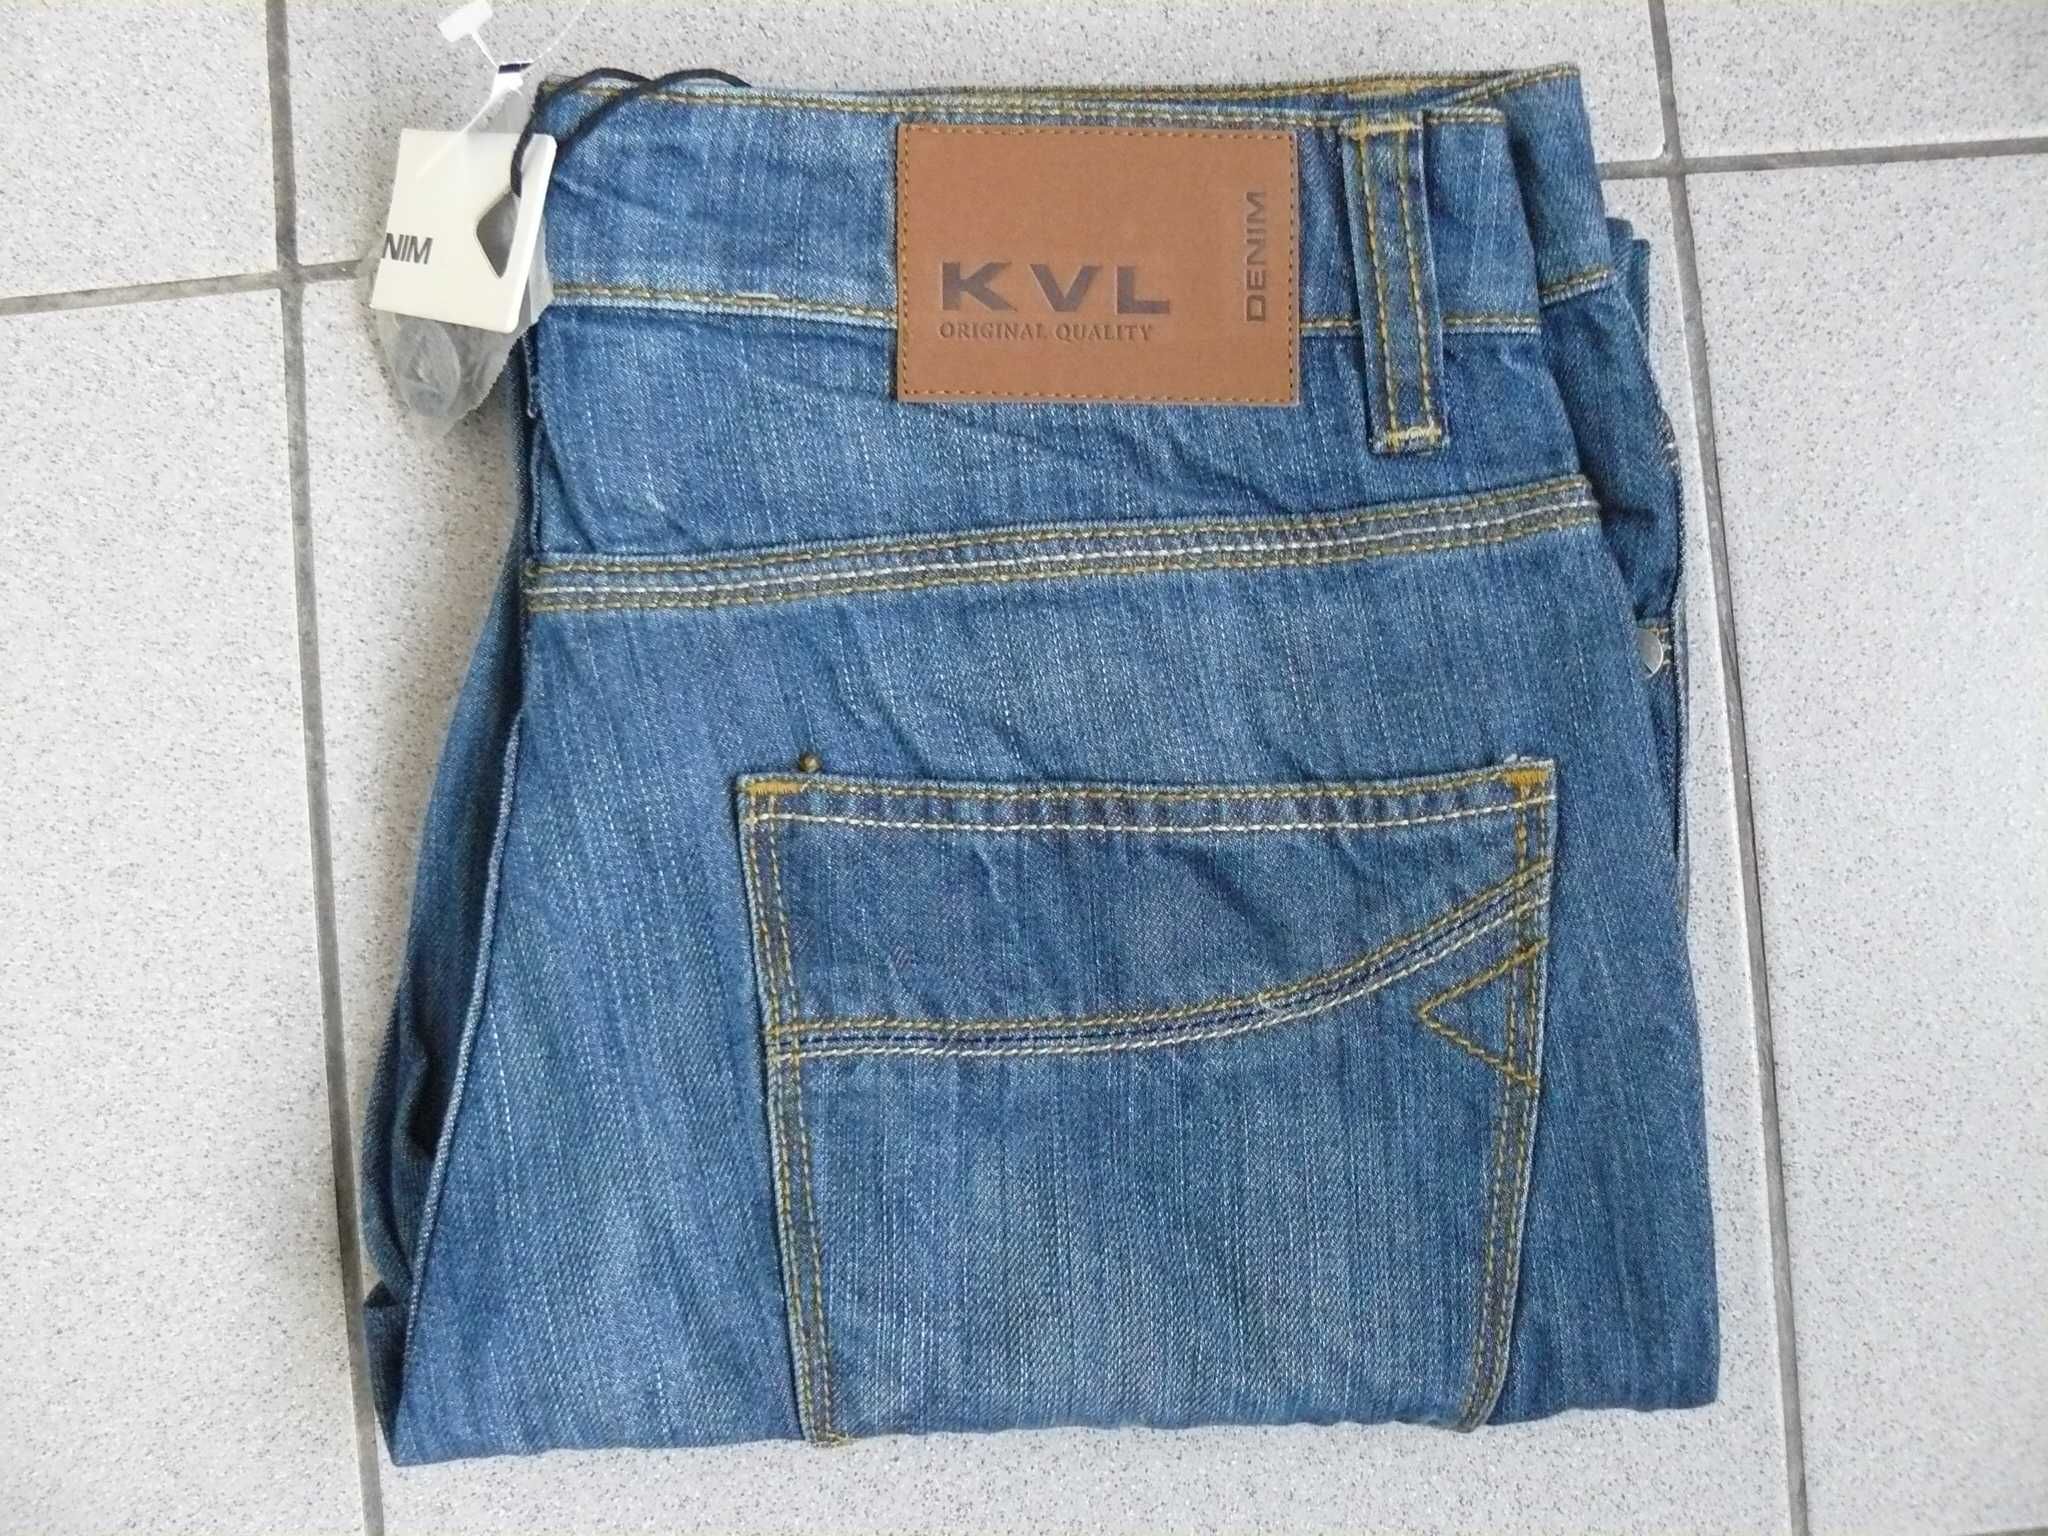 Jeans/Blugi Barbati KENVELO Noi KVL6 Originali,Marime W30/L32,CAC 144B